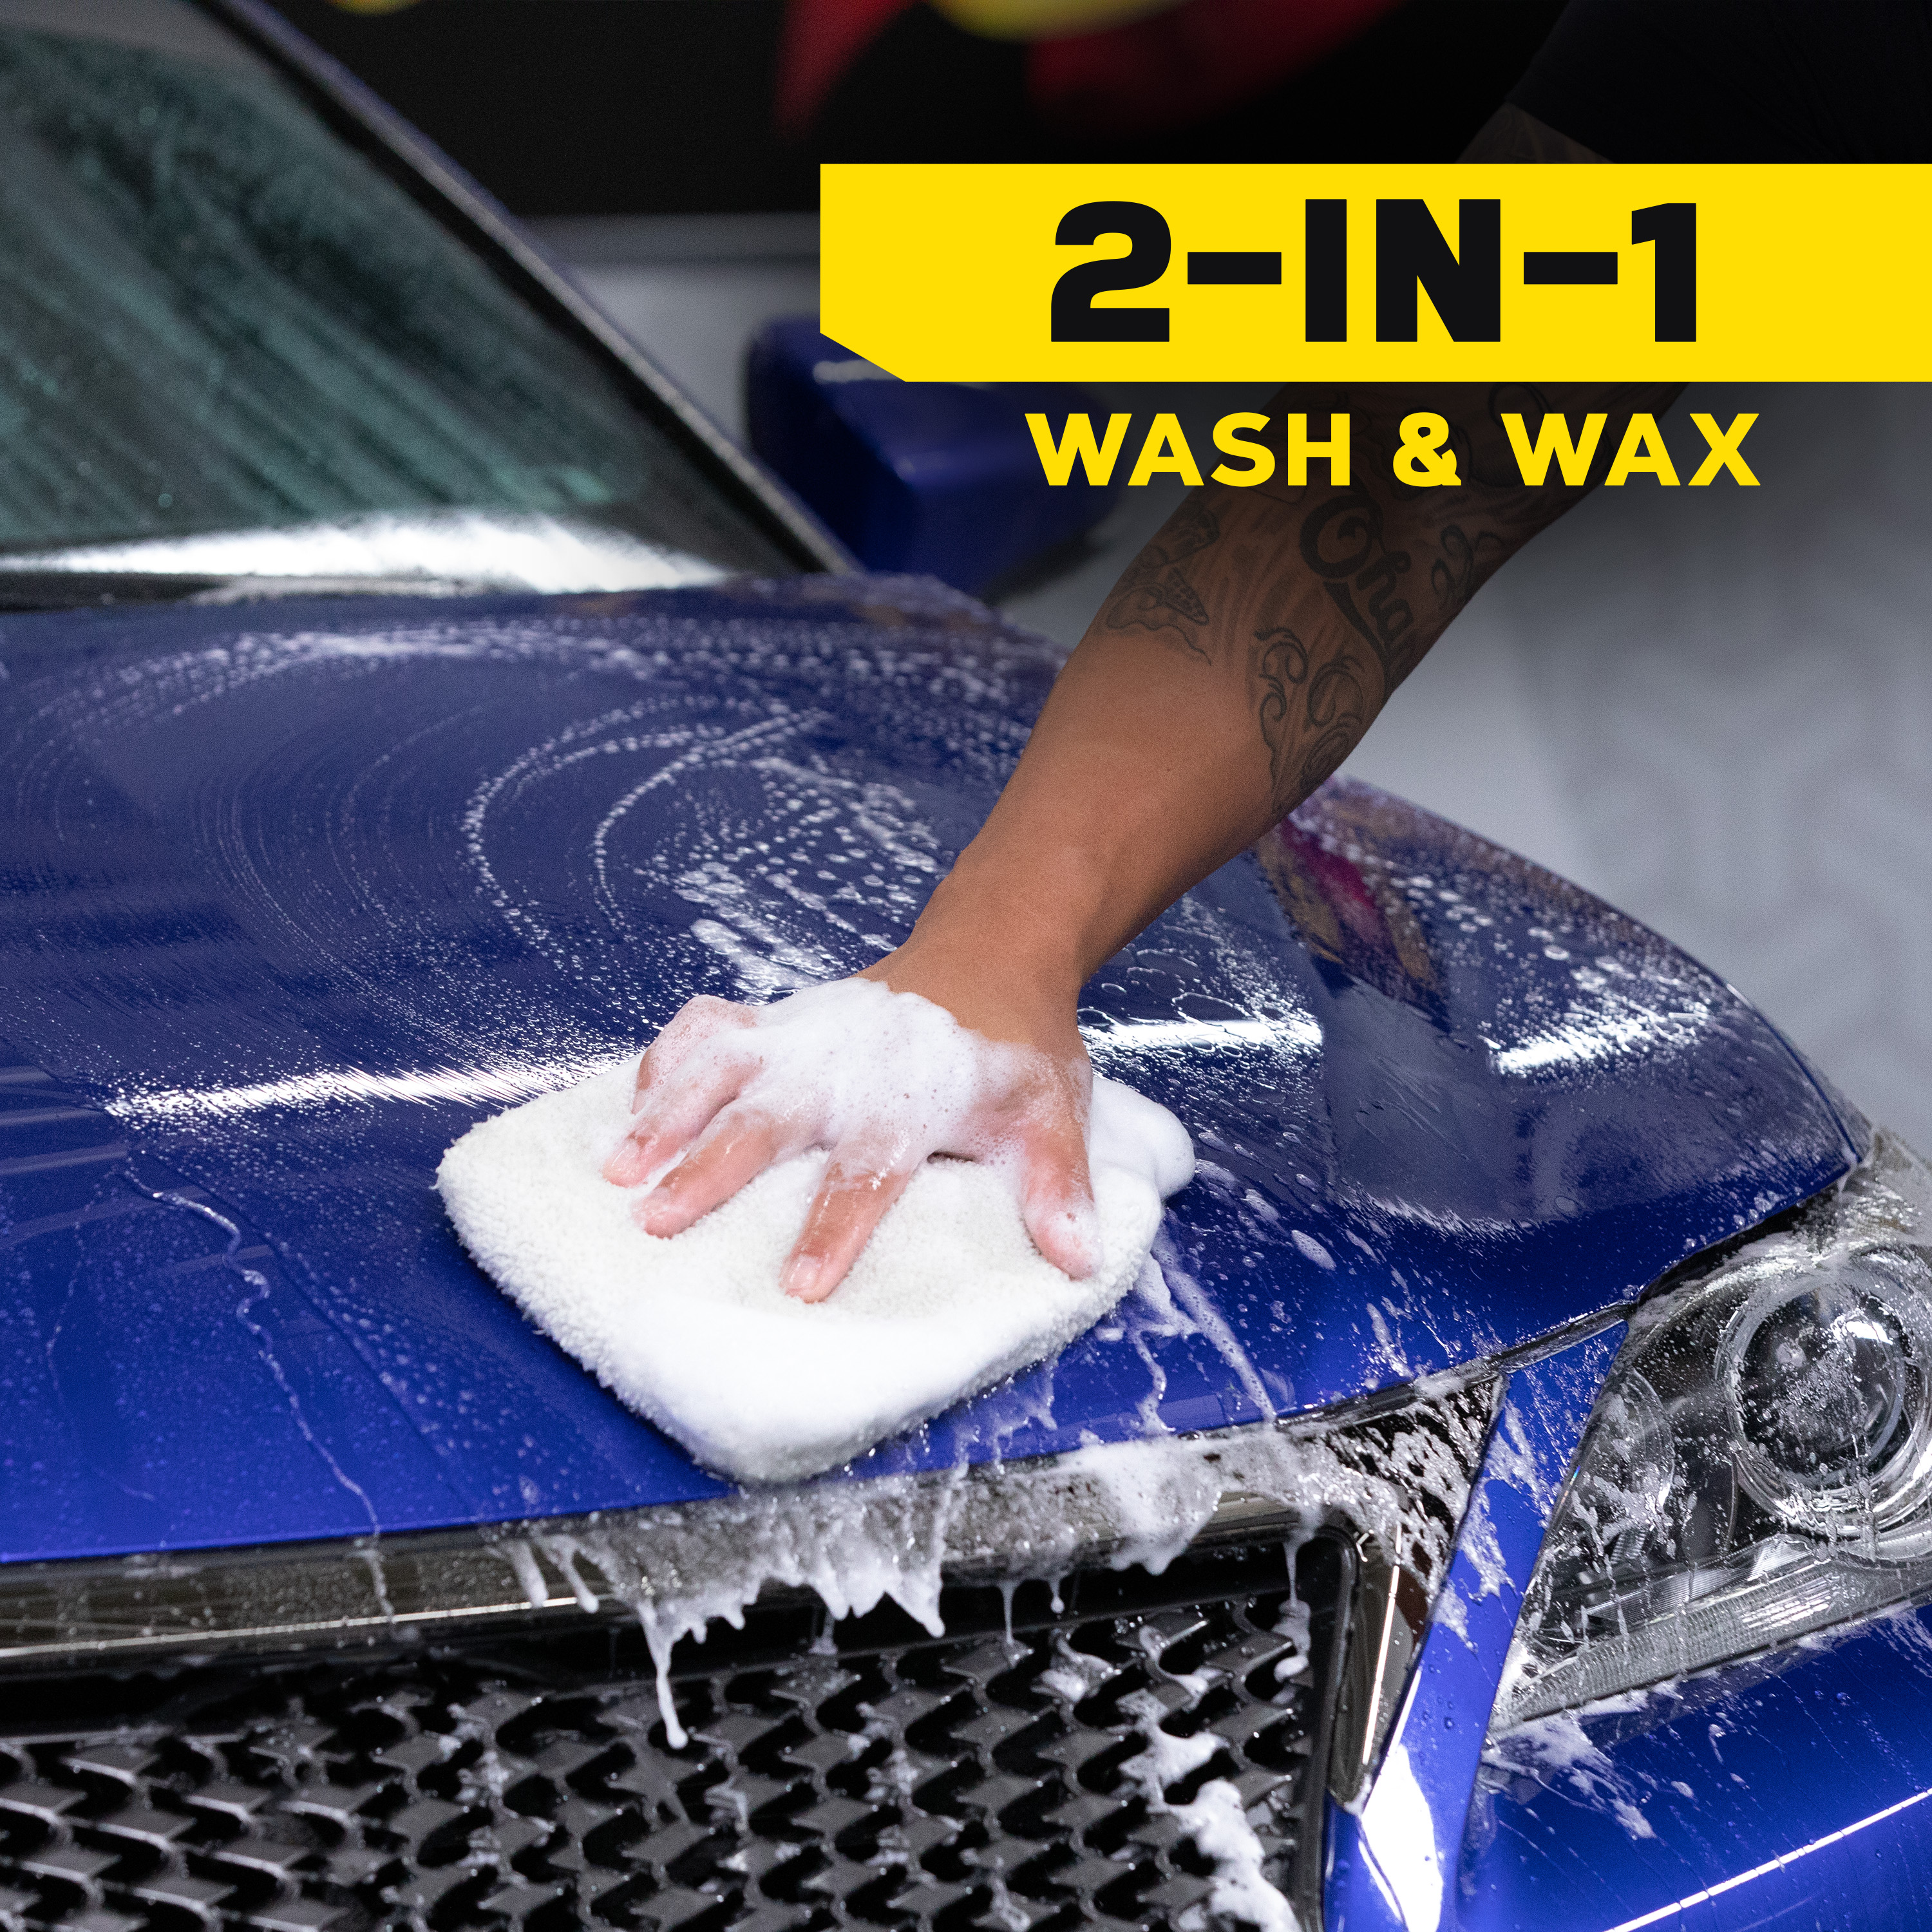 Meguiar's Hybrid Ceramic Wash & Wax - Sophisticated Car Wash